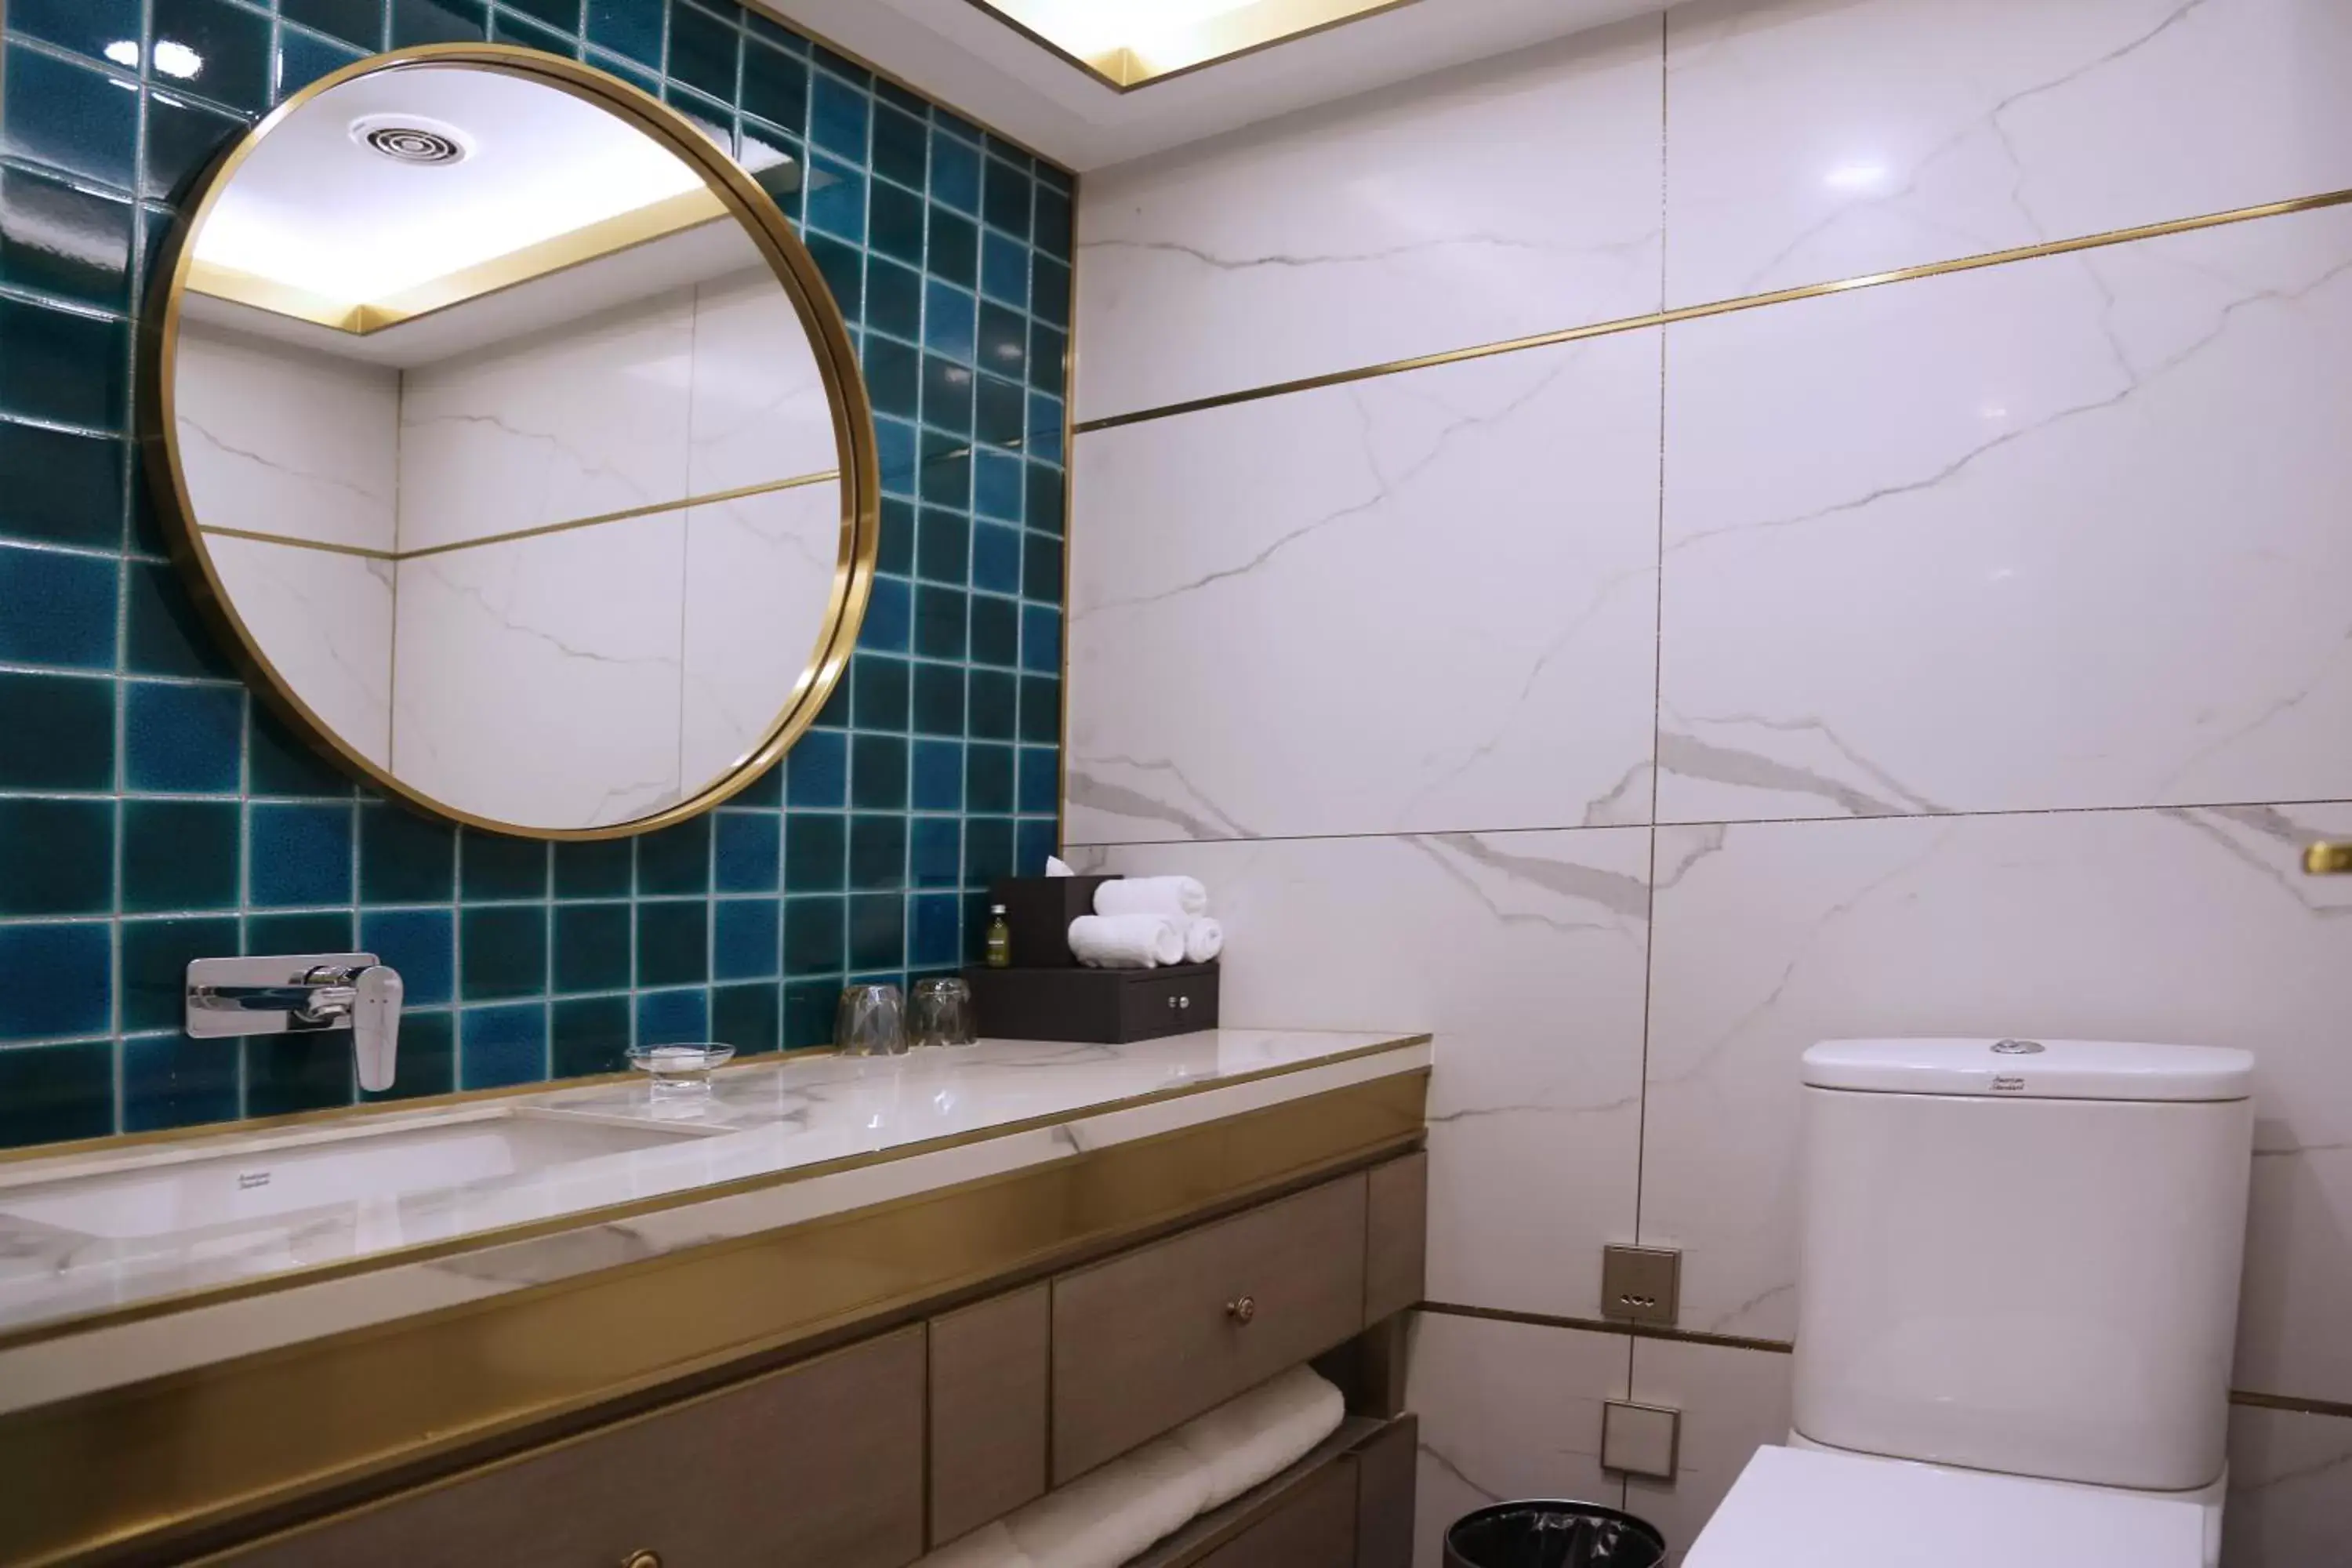 Bathroom in Nanjing Central Hotel